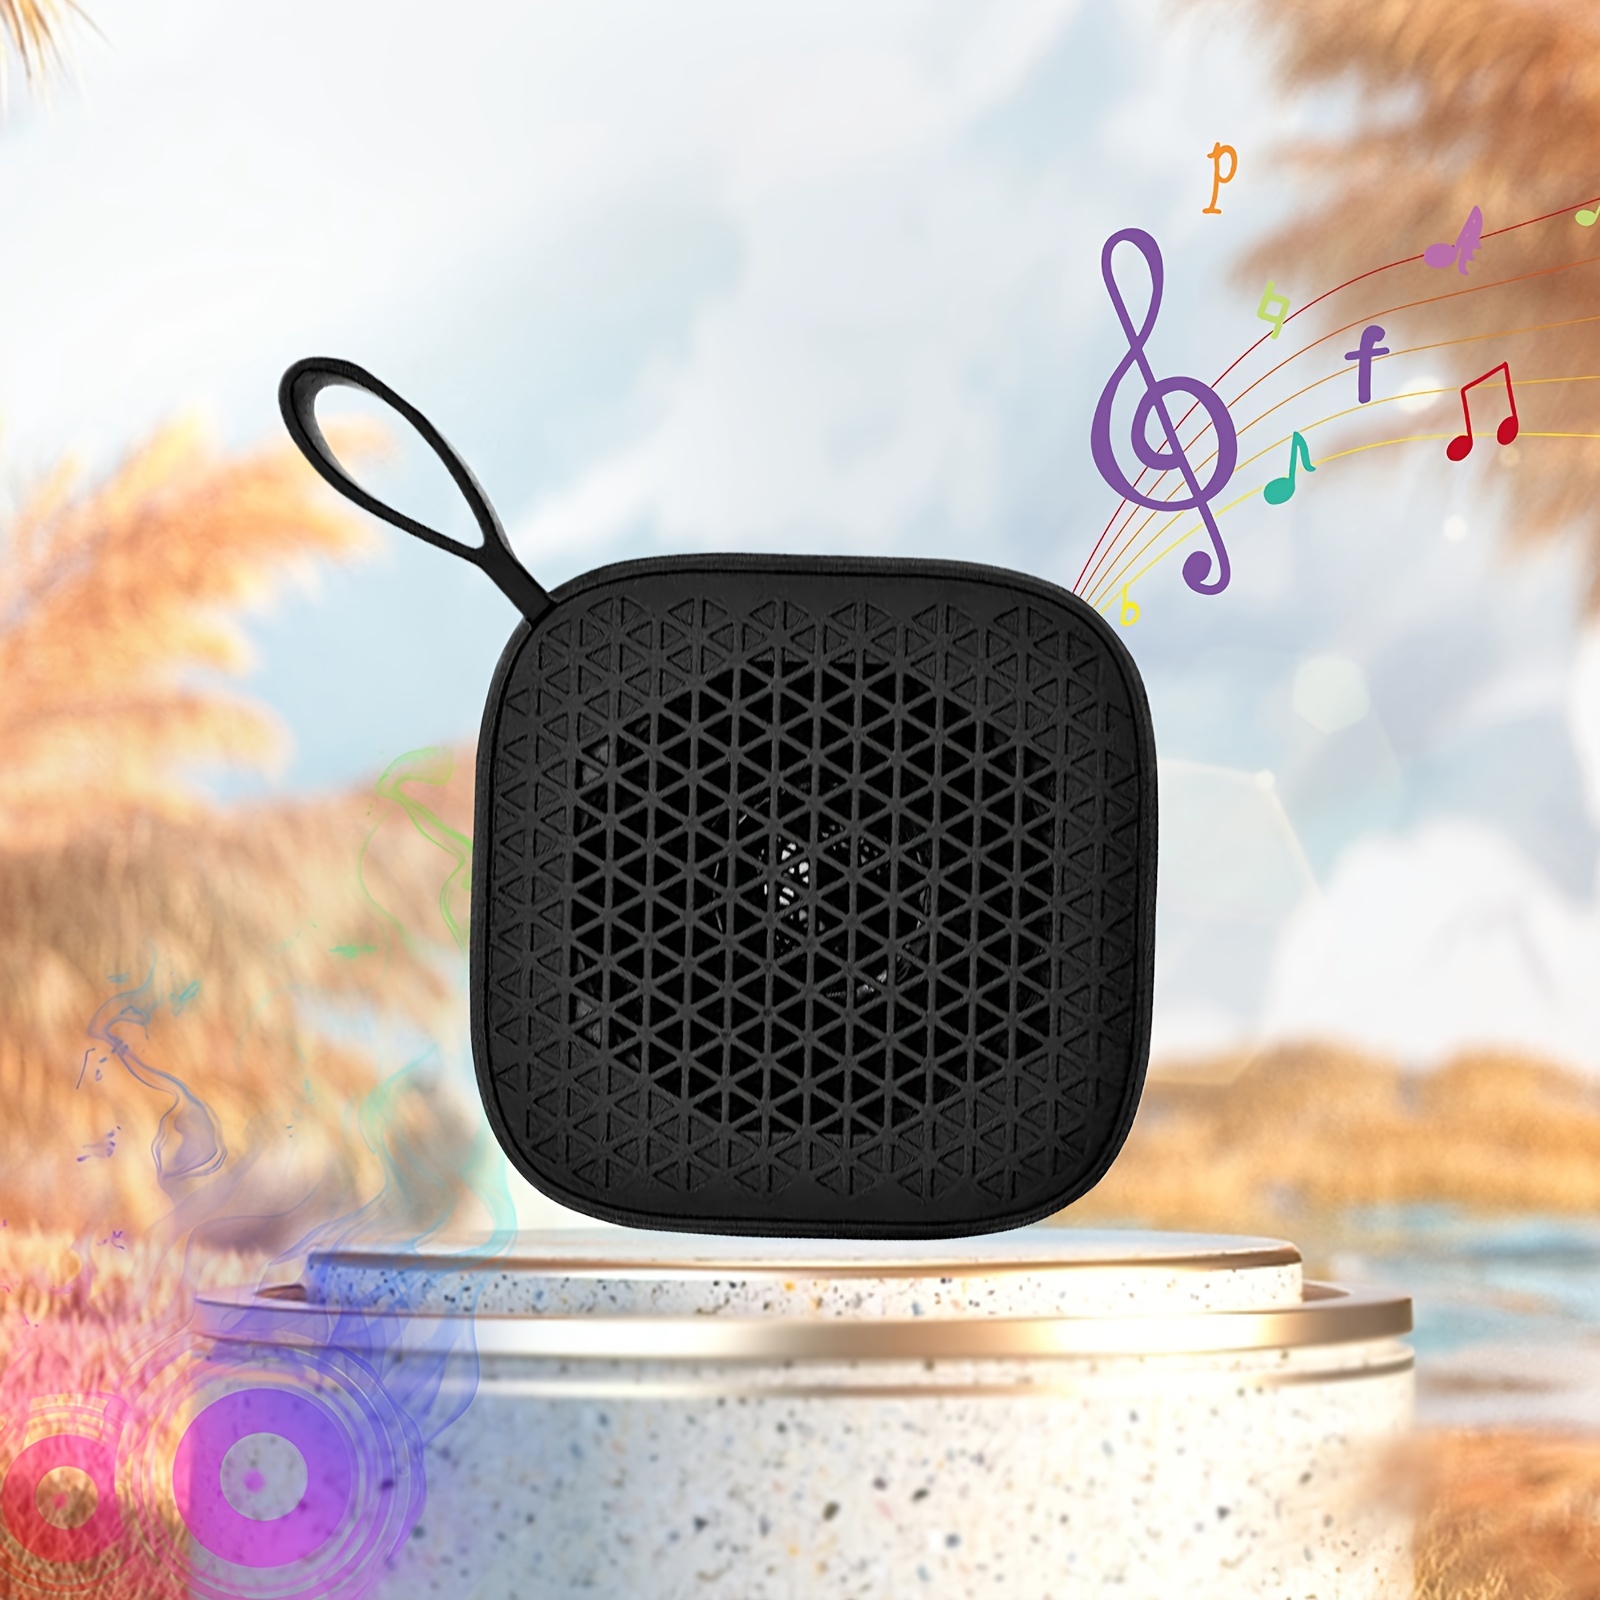 Parlante Bluetooth BT Sound Cube Radio FM Fiddler